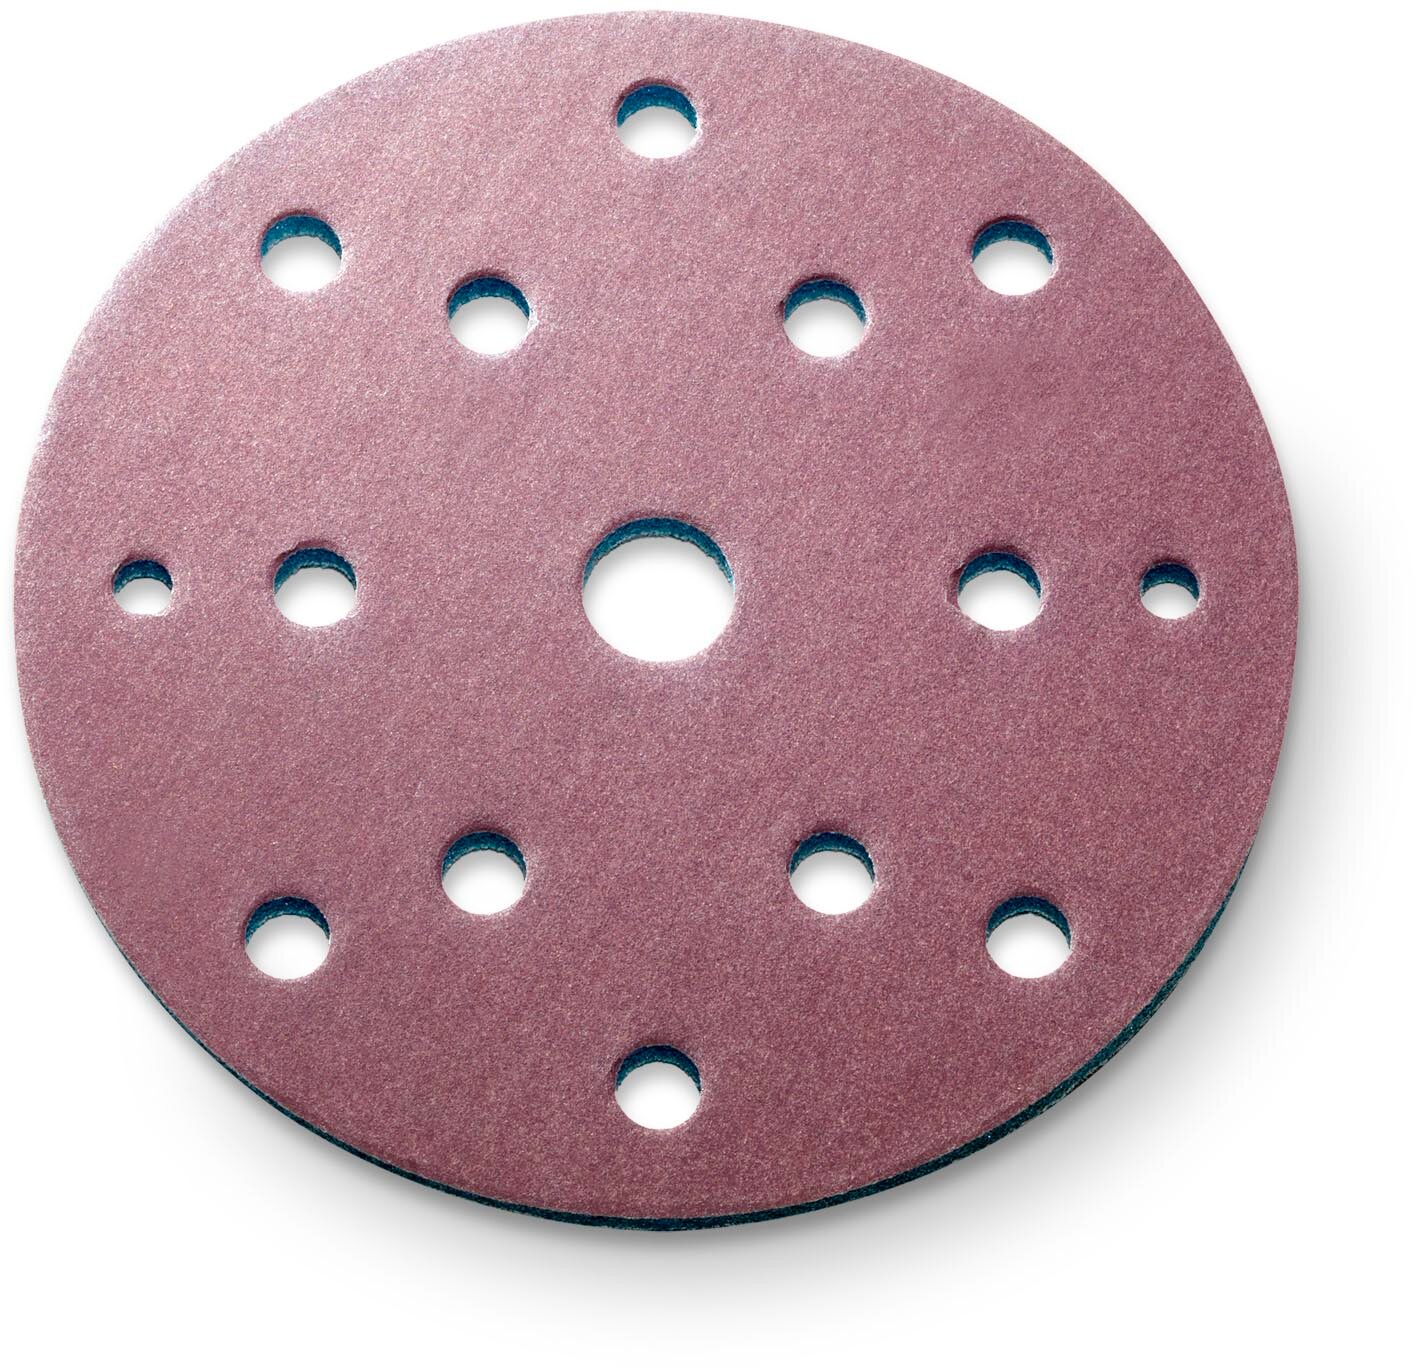 siaspeed disque abrasif Ø150mm 15 trous grain 1500 (50 pièces)